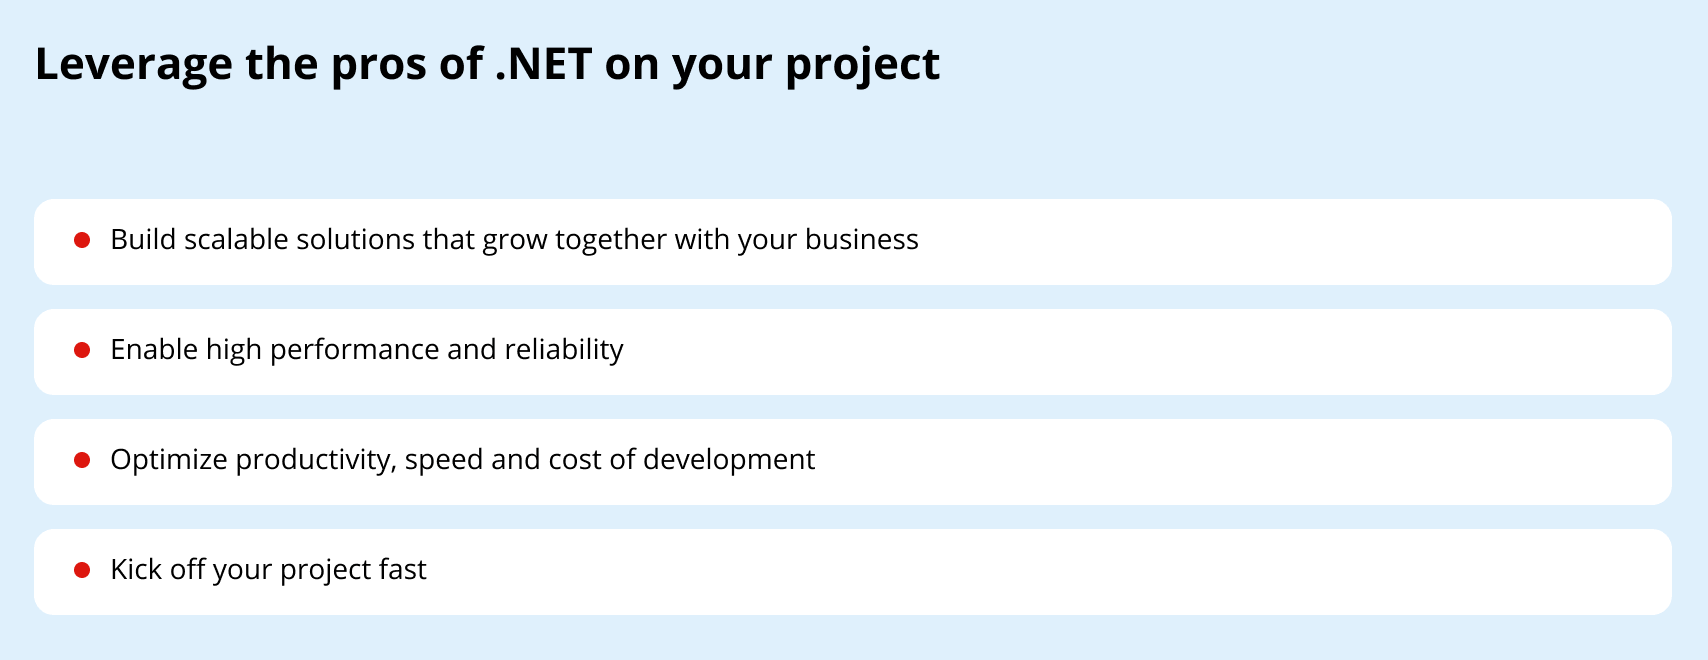 .NET advantages for business